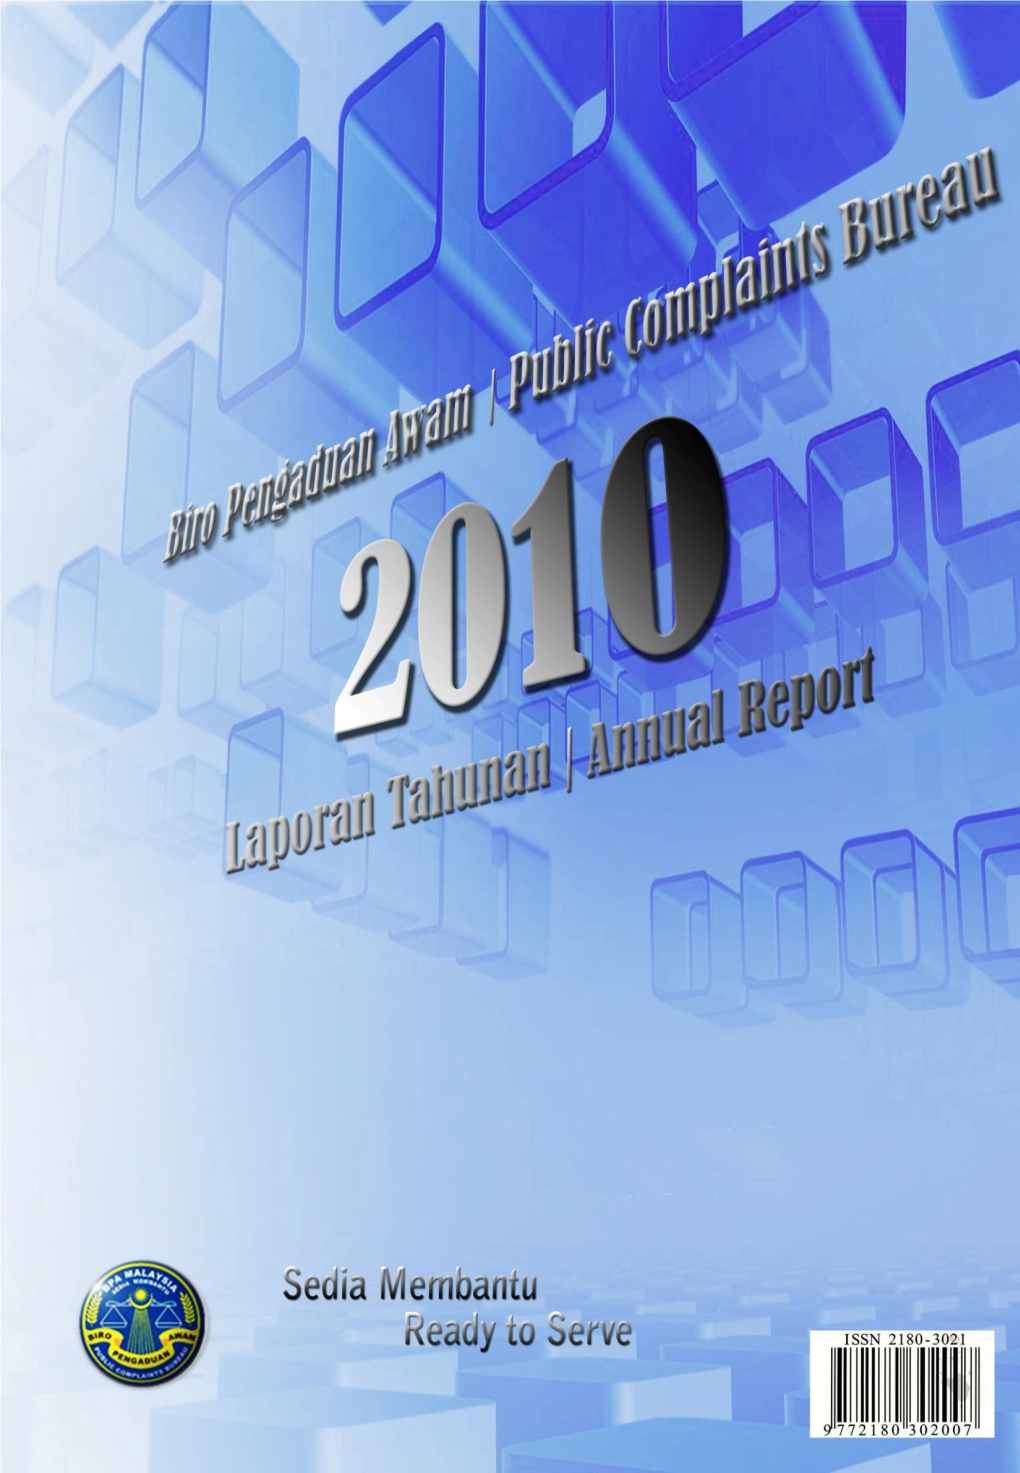 Laporan Tahuan 2010 Annual Report 2010